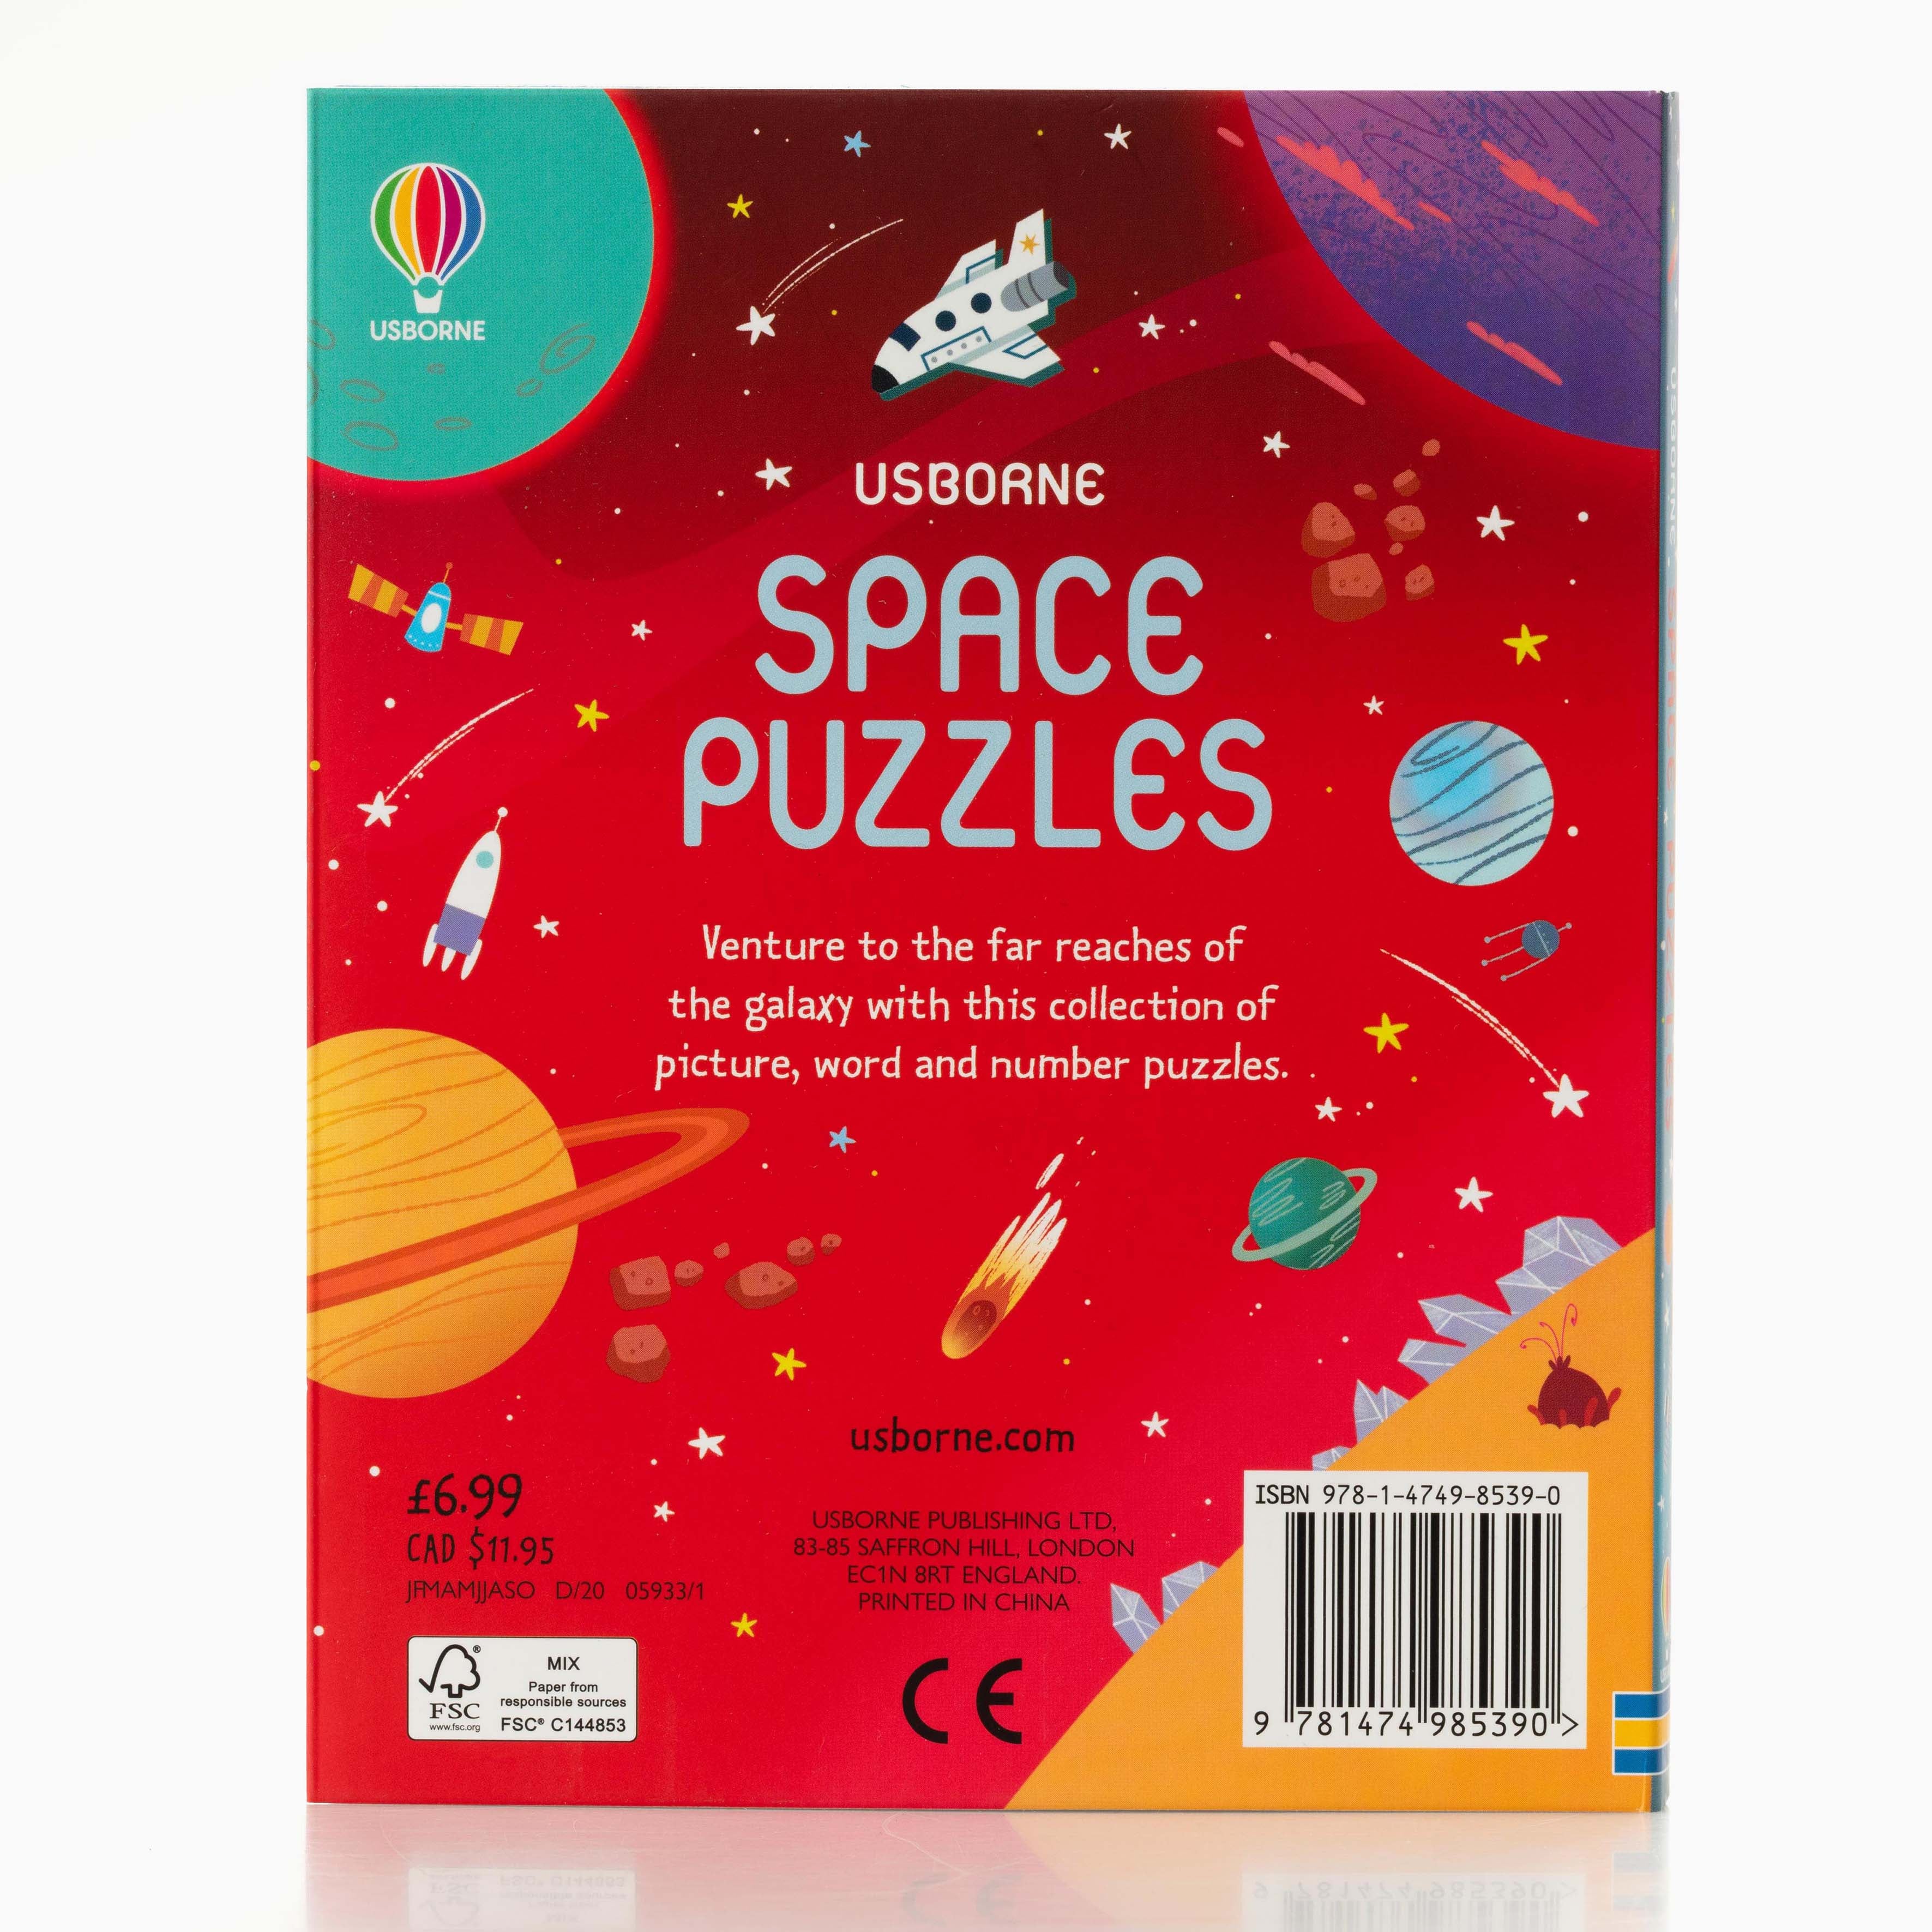 SpacePuzzlesback.jpg